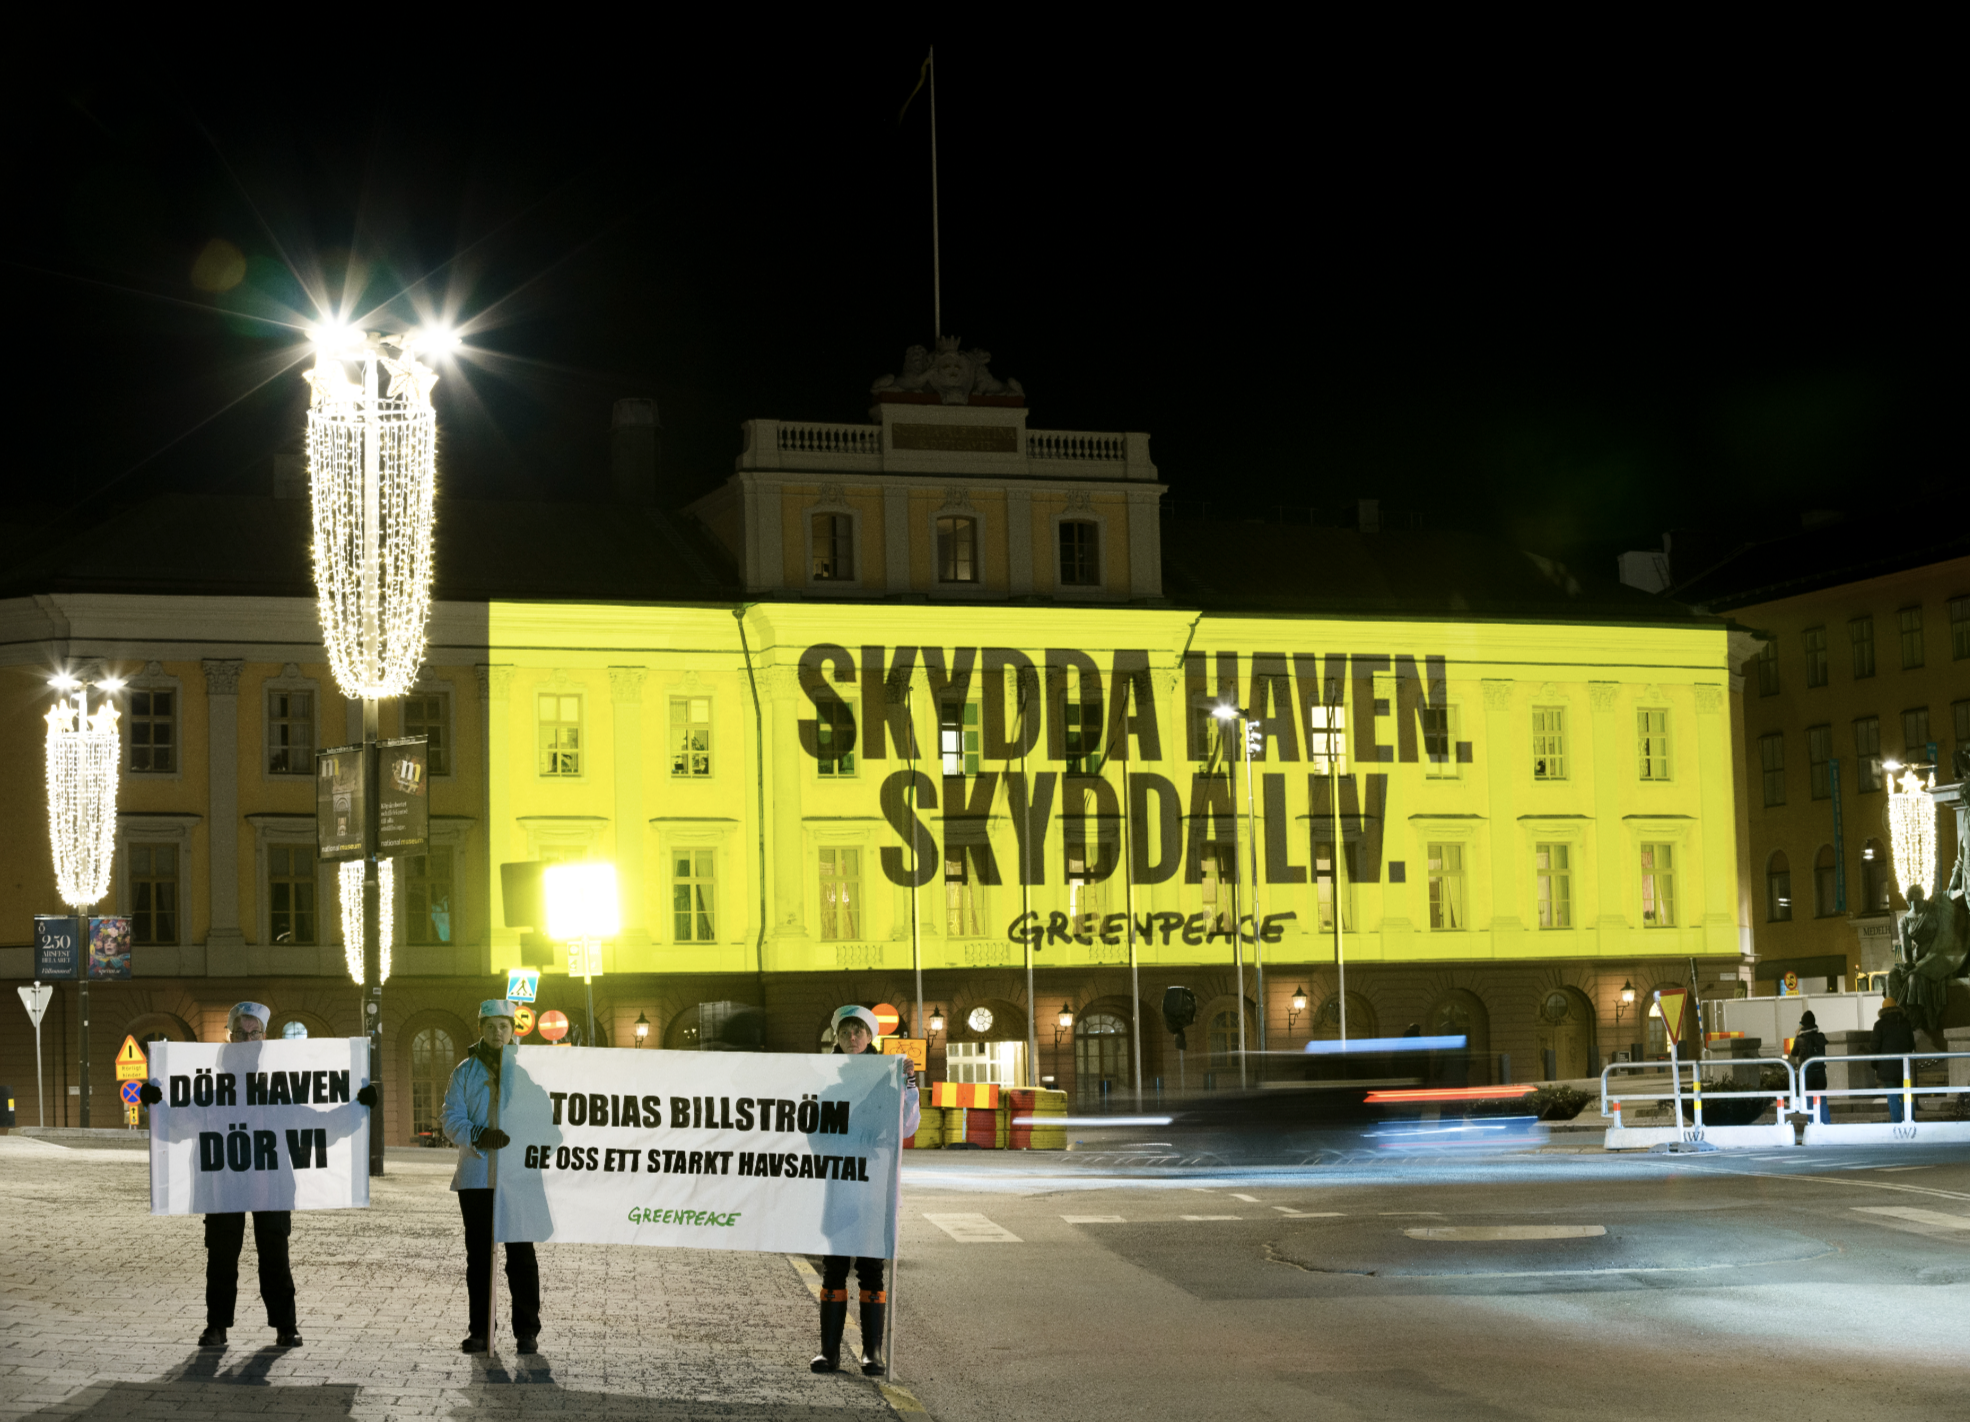 Aktivister i Sverige dframför projicering som säger Skydda haven, skydda liv.